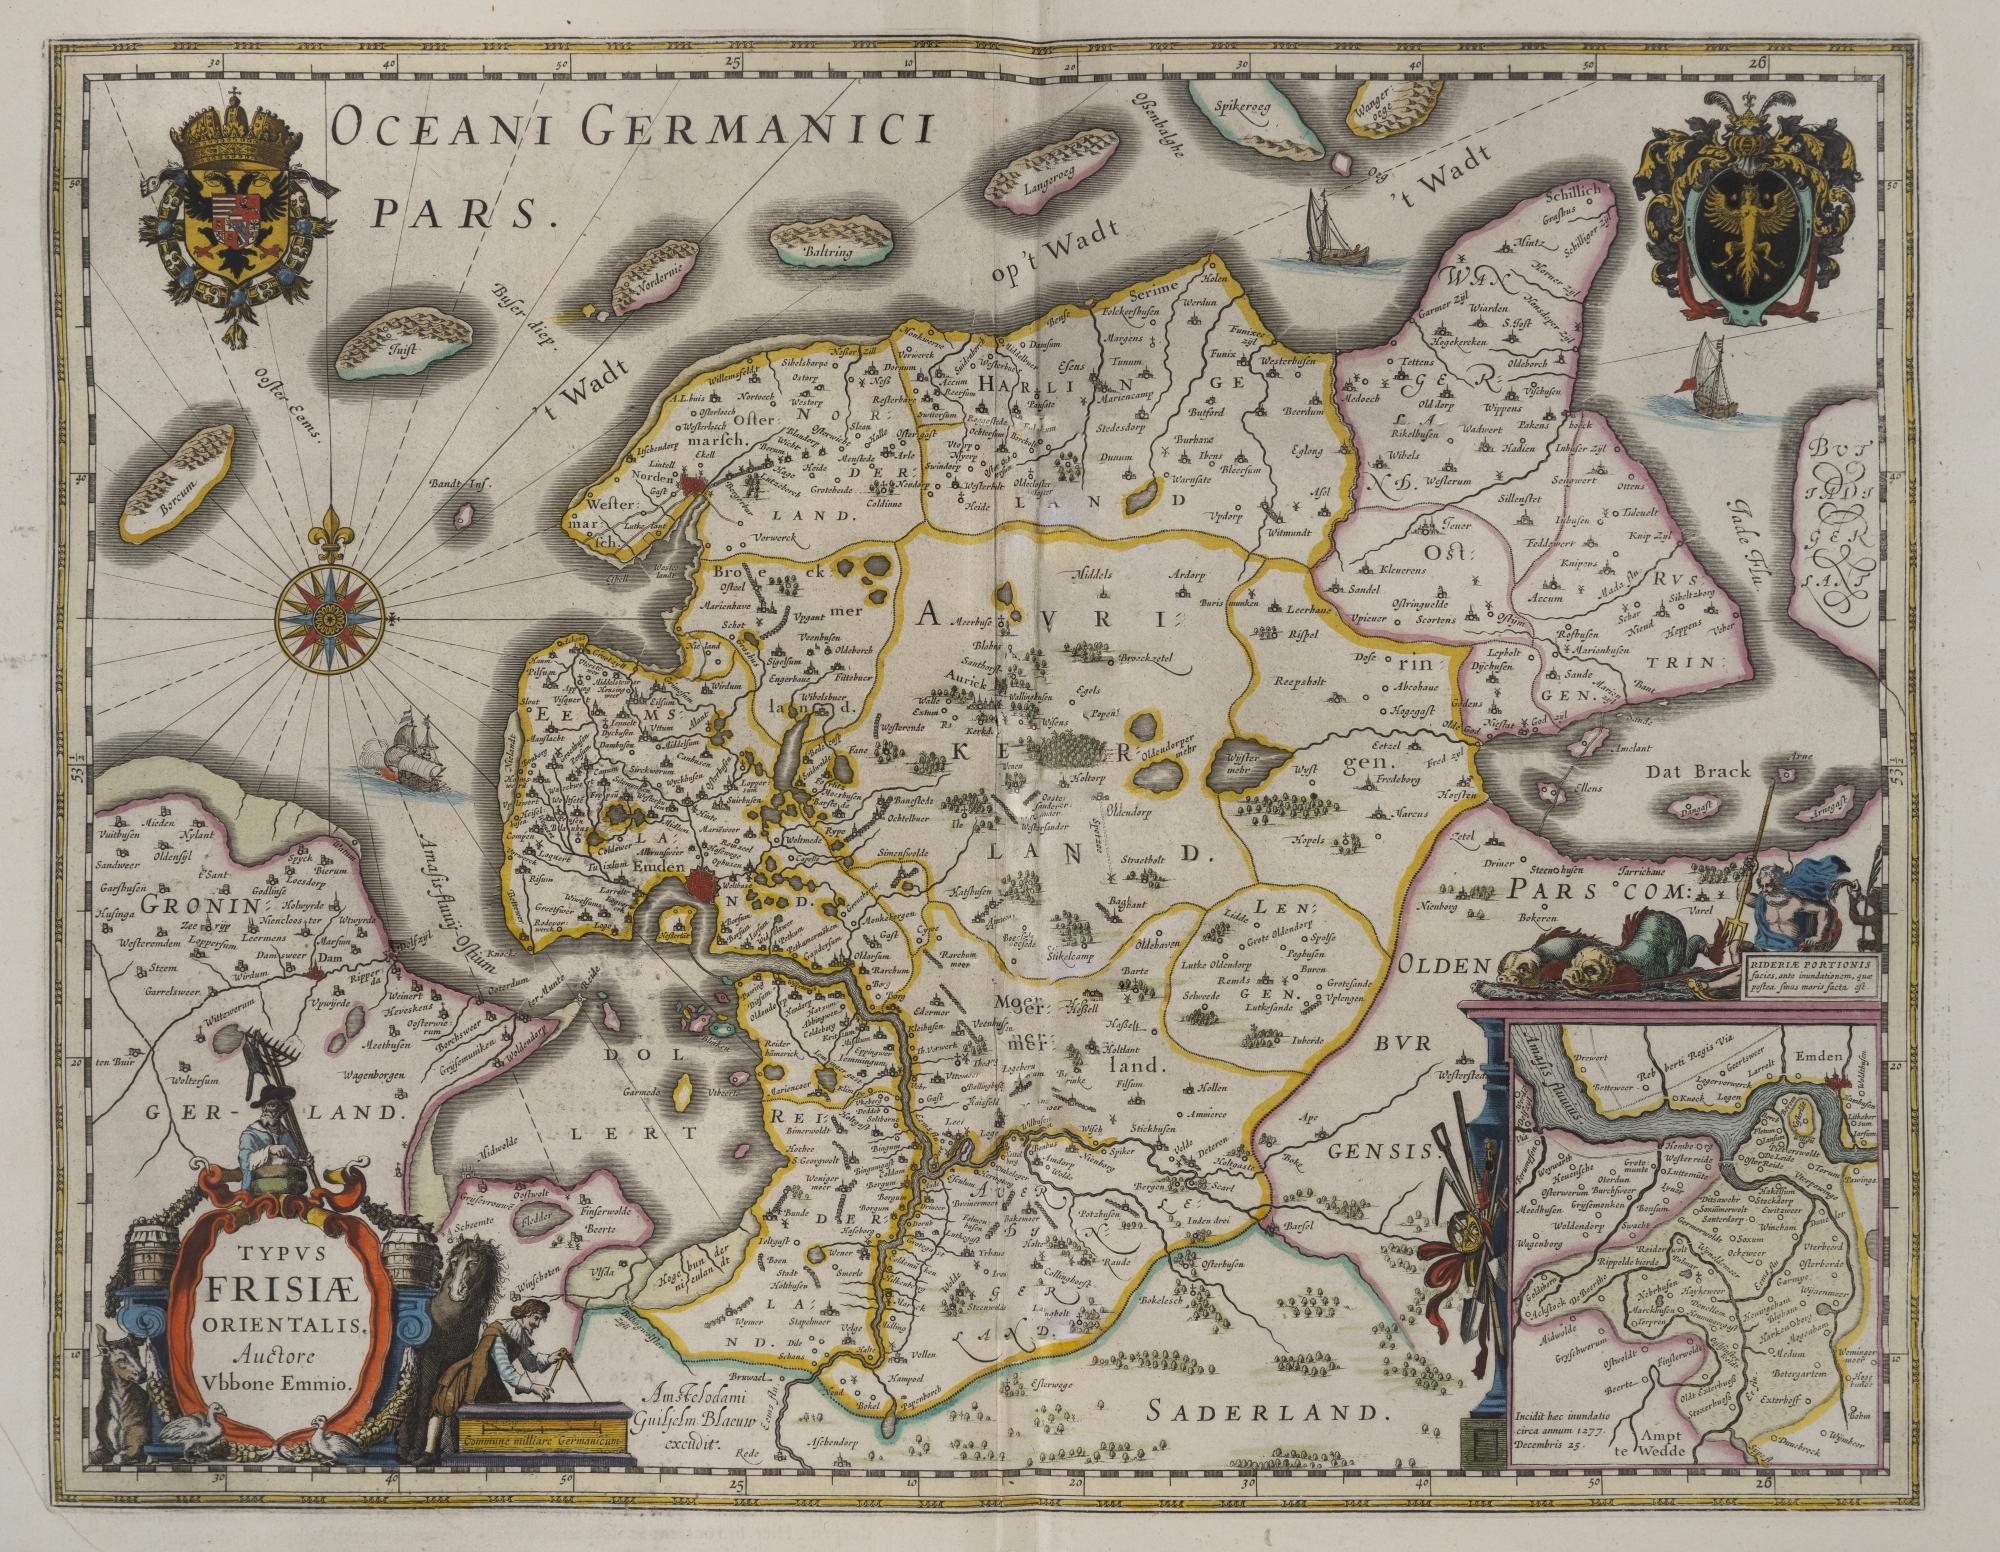 K03. Kaart van Oost-Friesland uit: Blaeu, Grooten atlas, oft werelt-beschryving, in welcke ’t aertryck, de zee en hemel wordt vertoont en beschreven (Amsterdam 1664) (ex. UBG)K03. Map of East-Frisia from: Blaeu, Grooten atlas, oft werelt-beschryving, in welcke ’t aertryck, de zee en hemel wordt vertoont en beschreven (Amsterdam 1664) (copy UBG)K03. Karte von Ostfriesland in: Blaeu, Grooten atlas, oft werelt-beschryving, in welcke ’t aertryck, de zee en hemel wordt vertoont en beschreven (Amsterdam 1664) (Exemplar UBG)